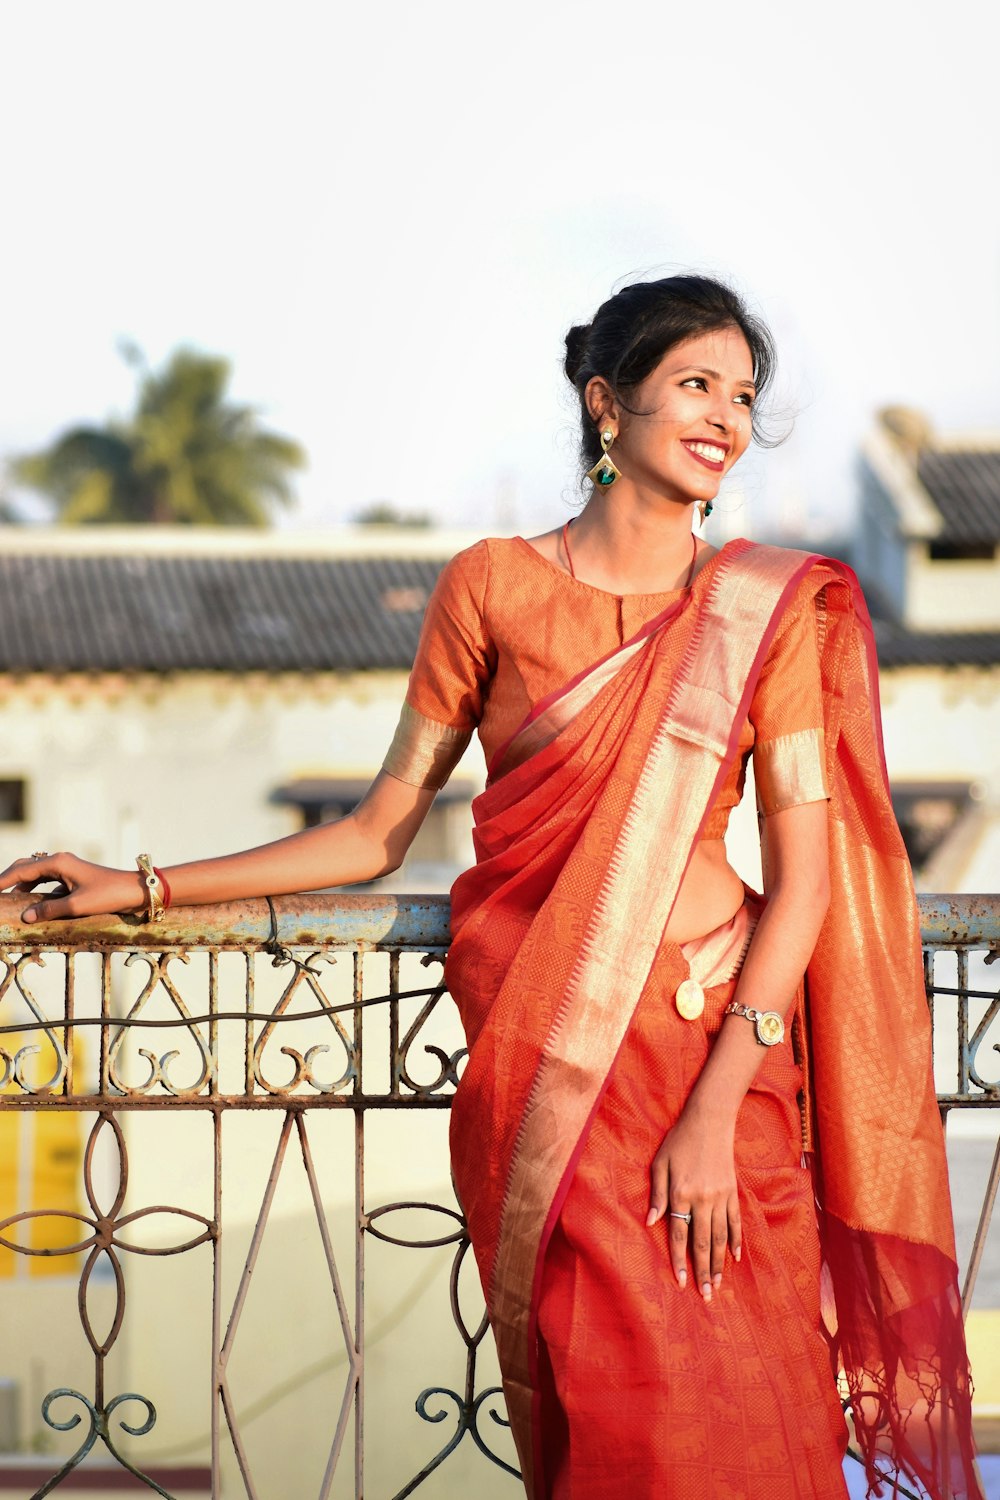 Una donna in un sari arancione in piedi su un balcone